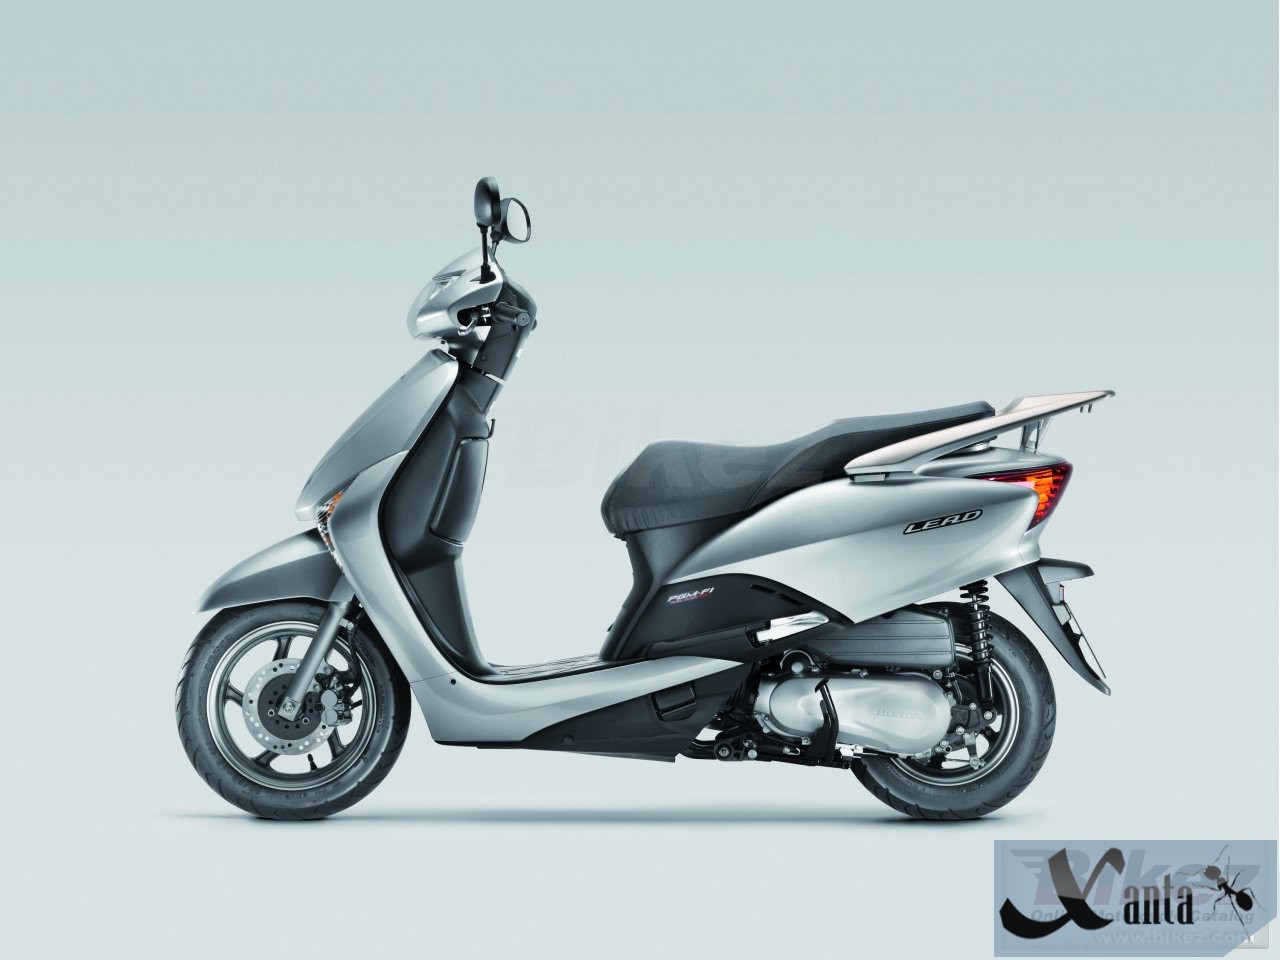 Honda lead технические характеристики японских скутеров.